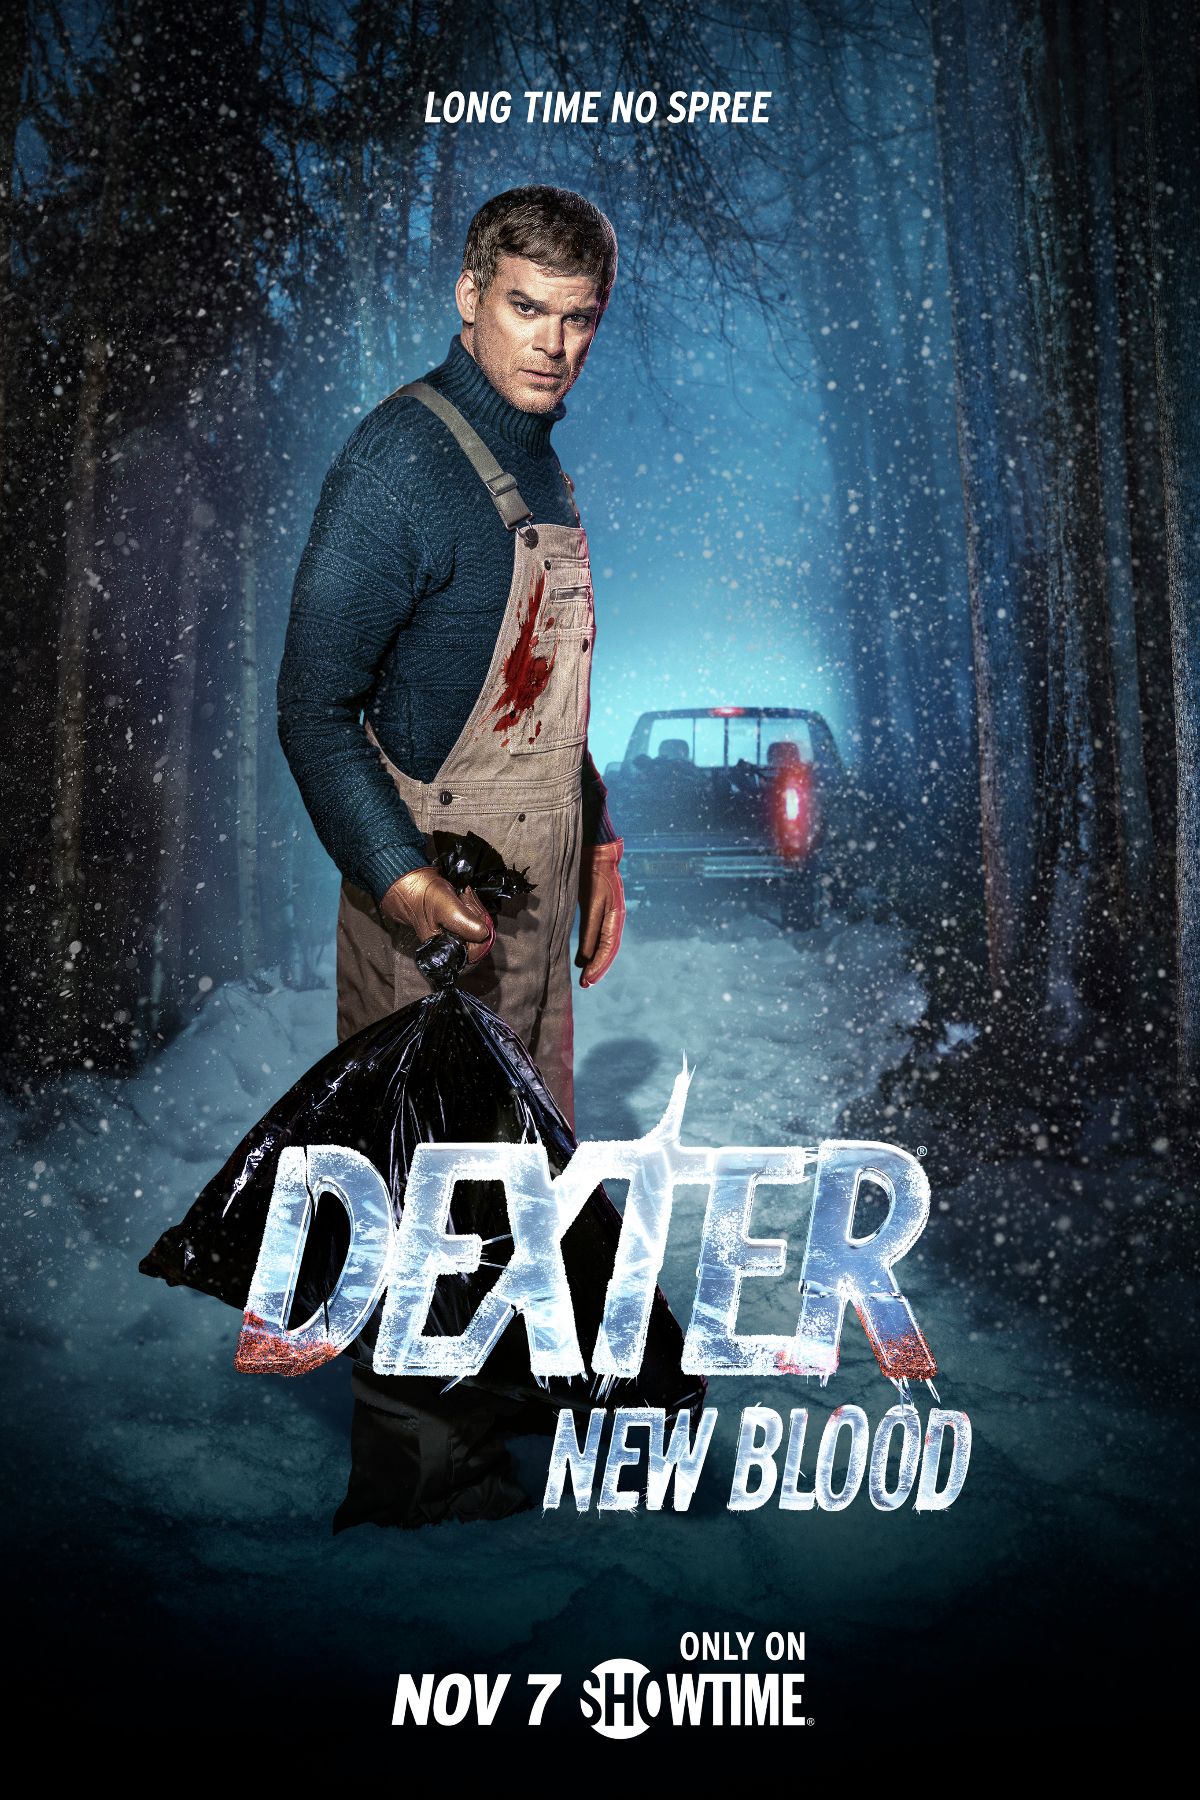 dexter-new-blood-poster-02